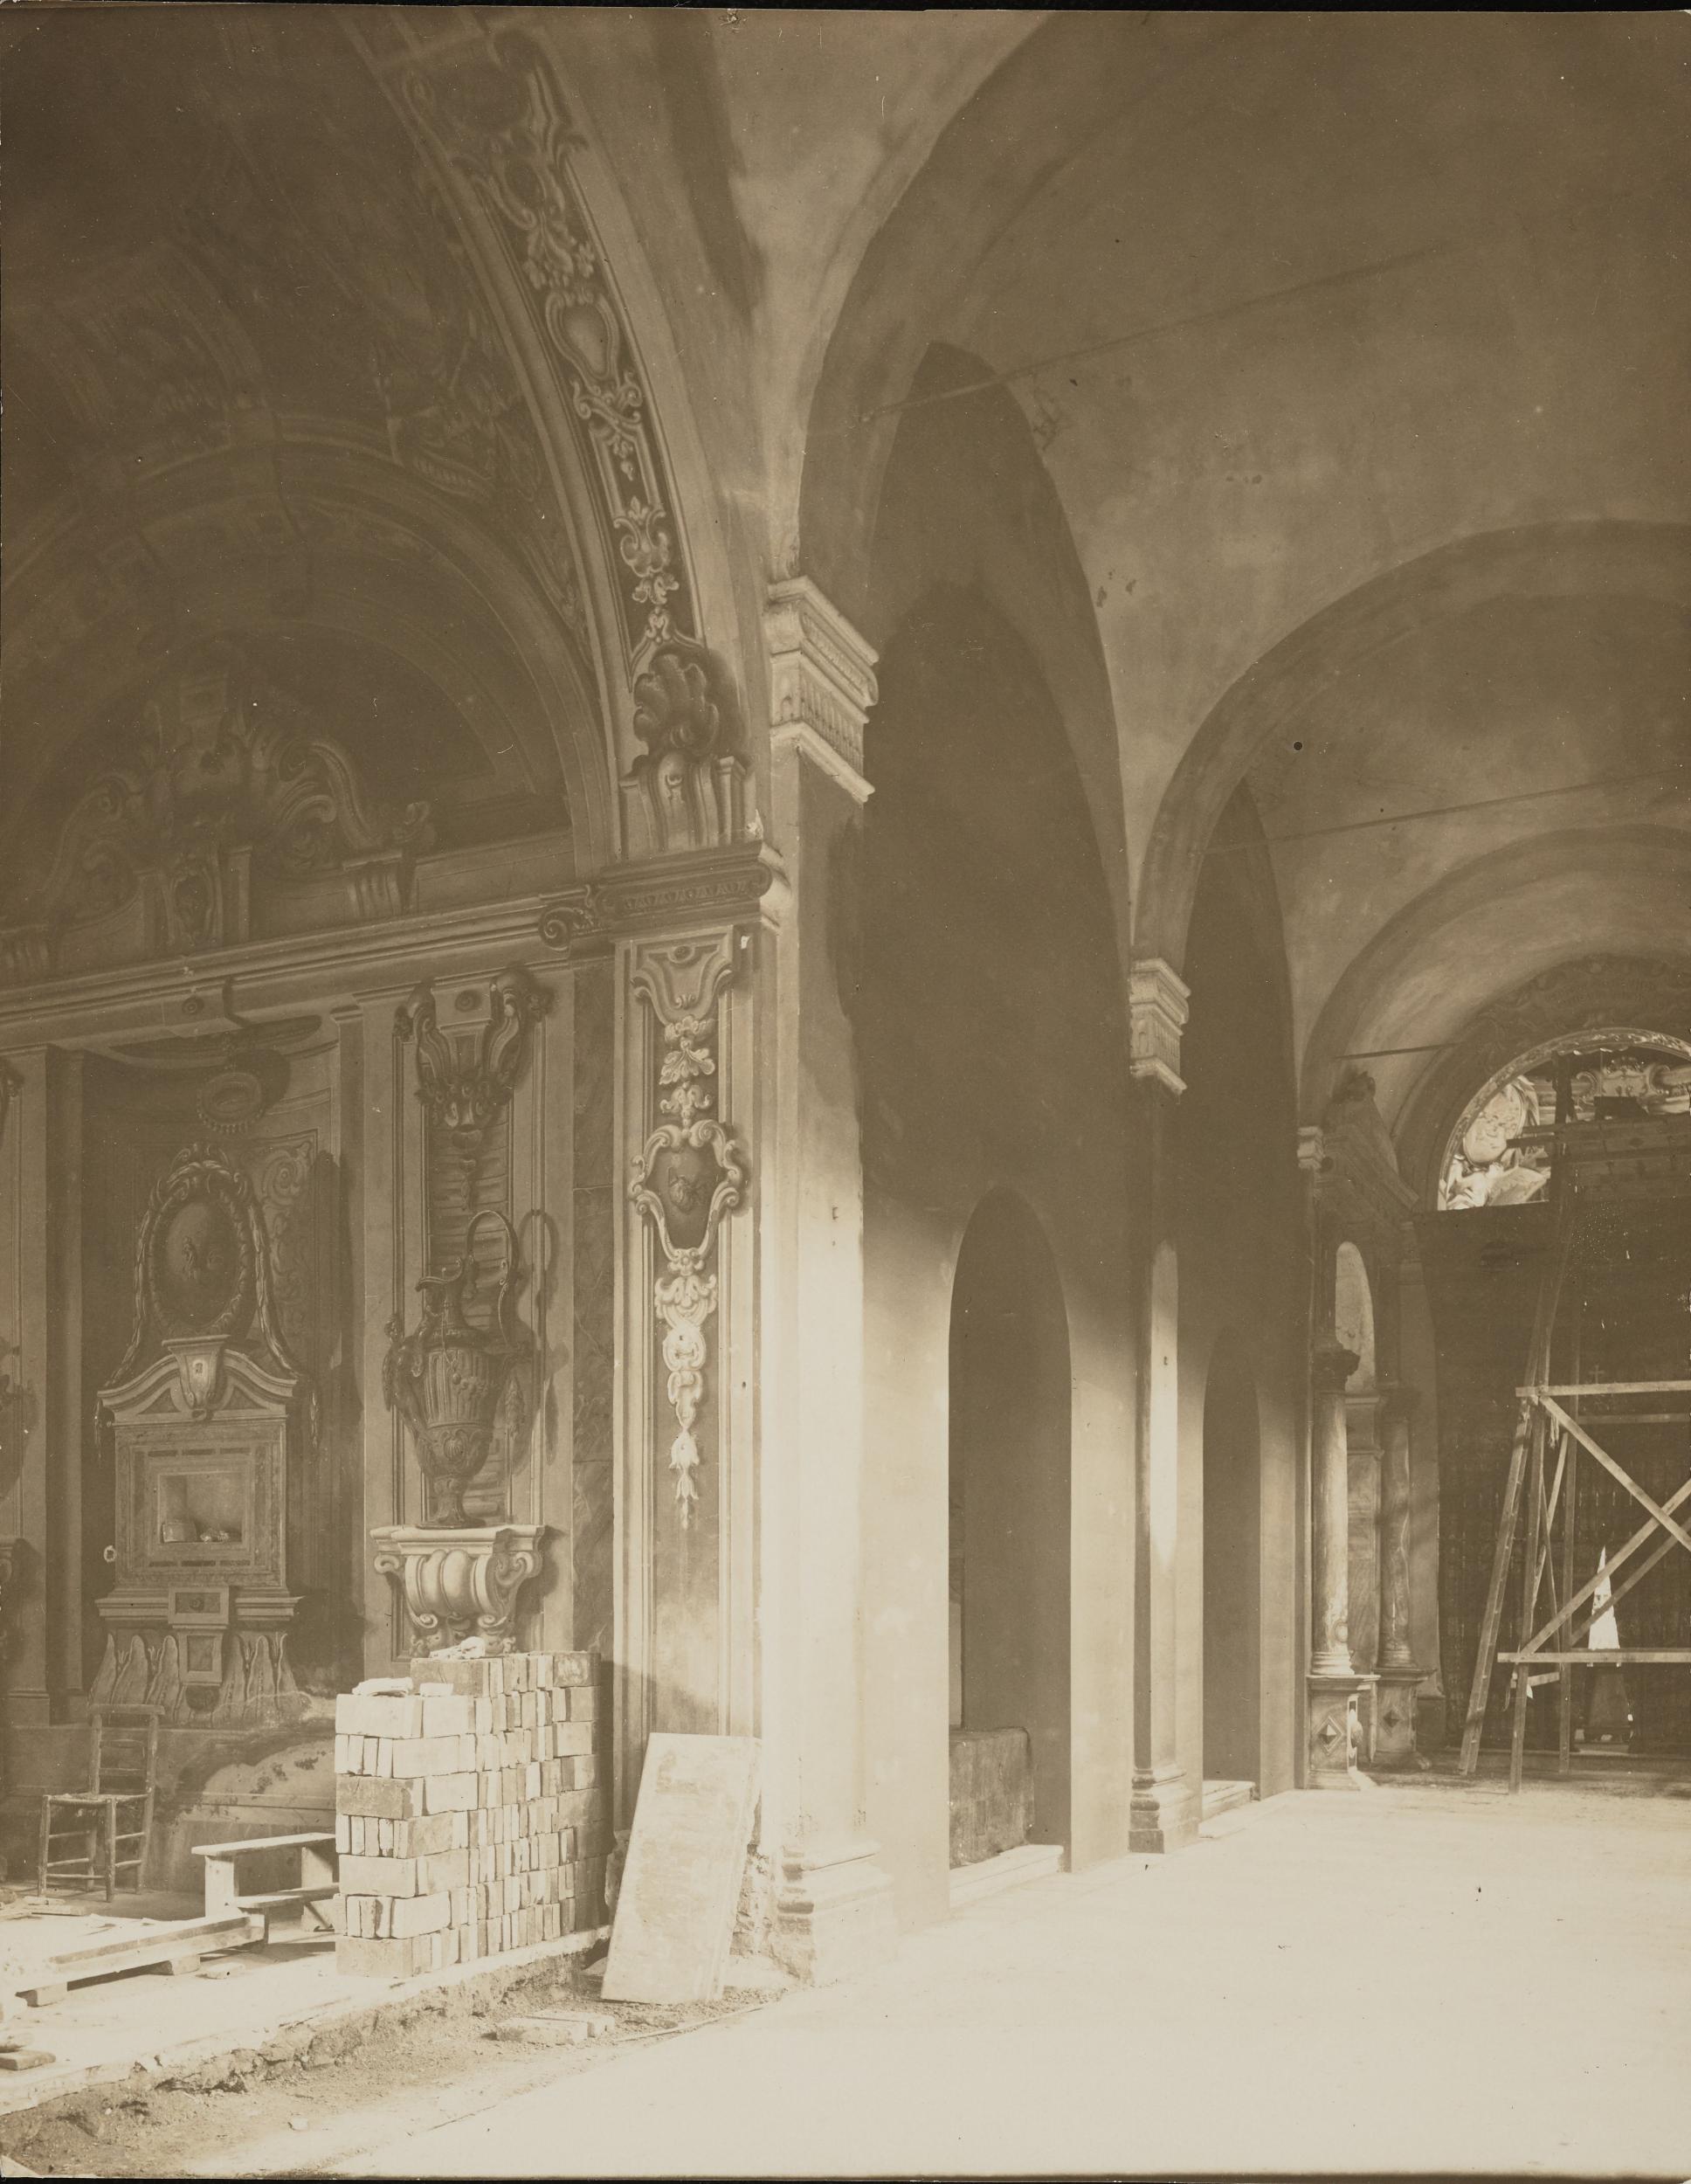 Fotografo non identificato, Ravenna - Chiesa di S.Apollinare Nuovo, interno, protezioni antibelliche, gelatina ai sali d'argento, MPI303887